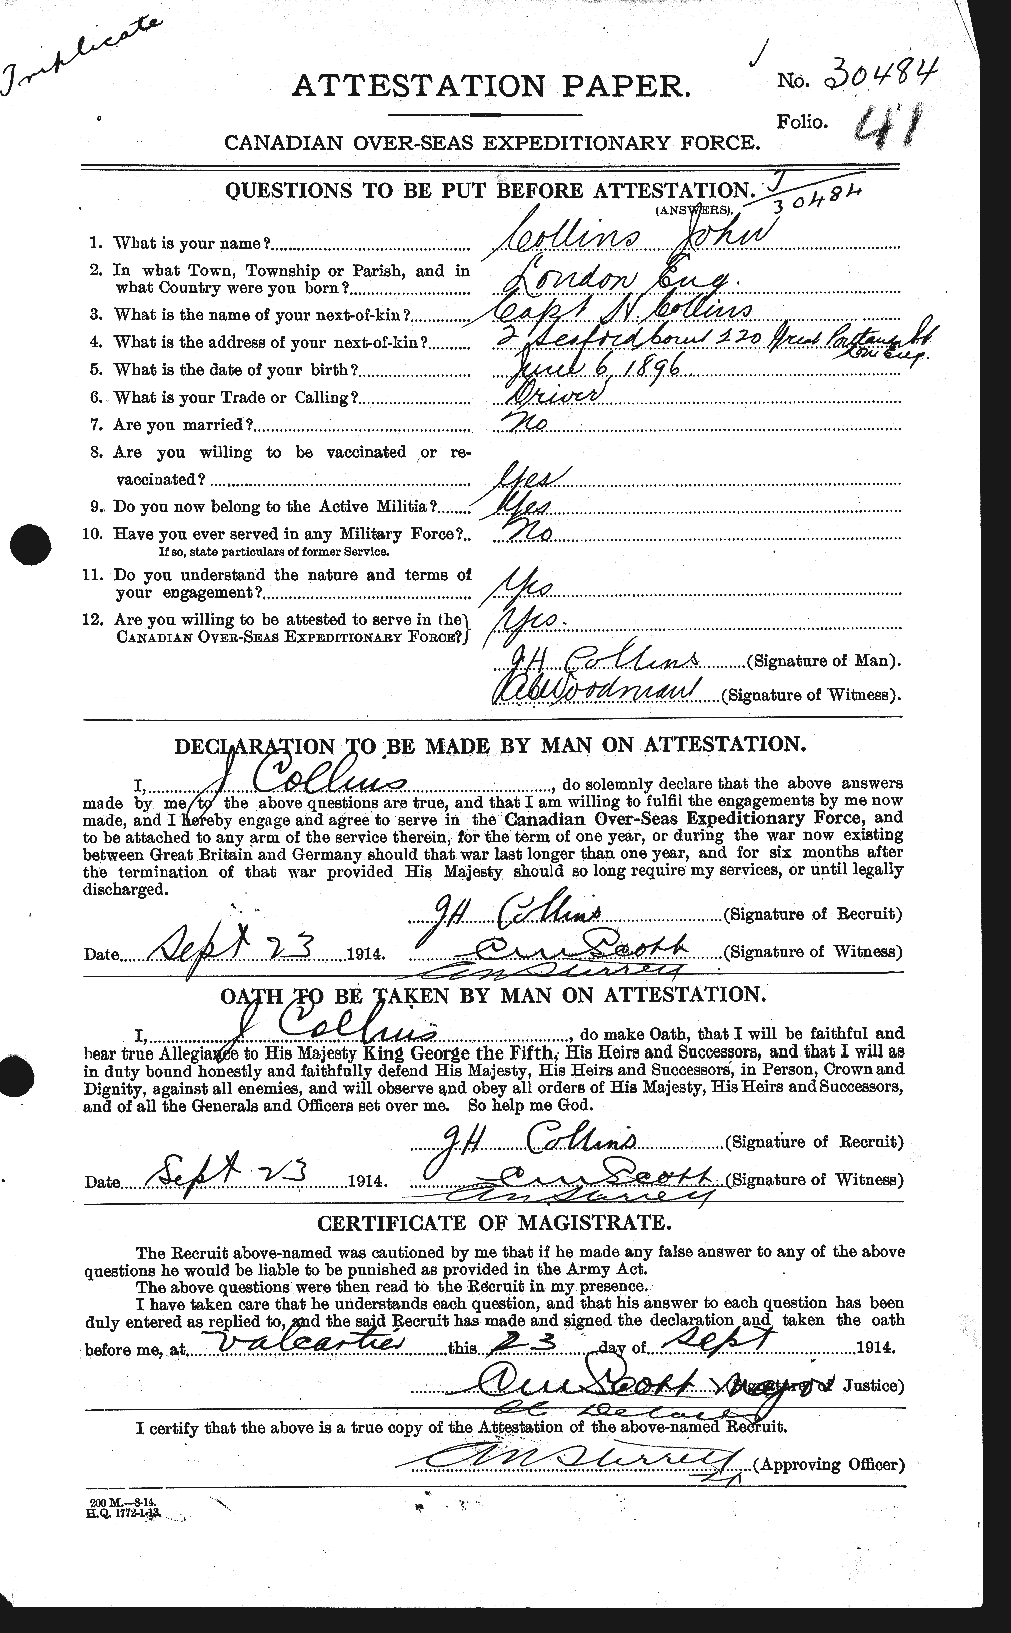 Dossiers du Personnel de la Première Guerre mondiale - CEC 069931a